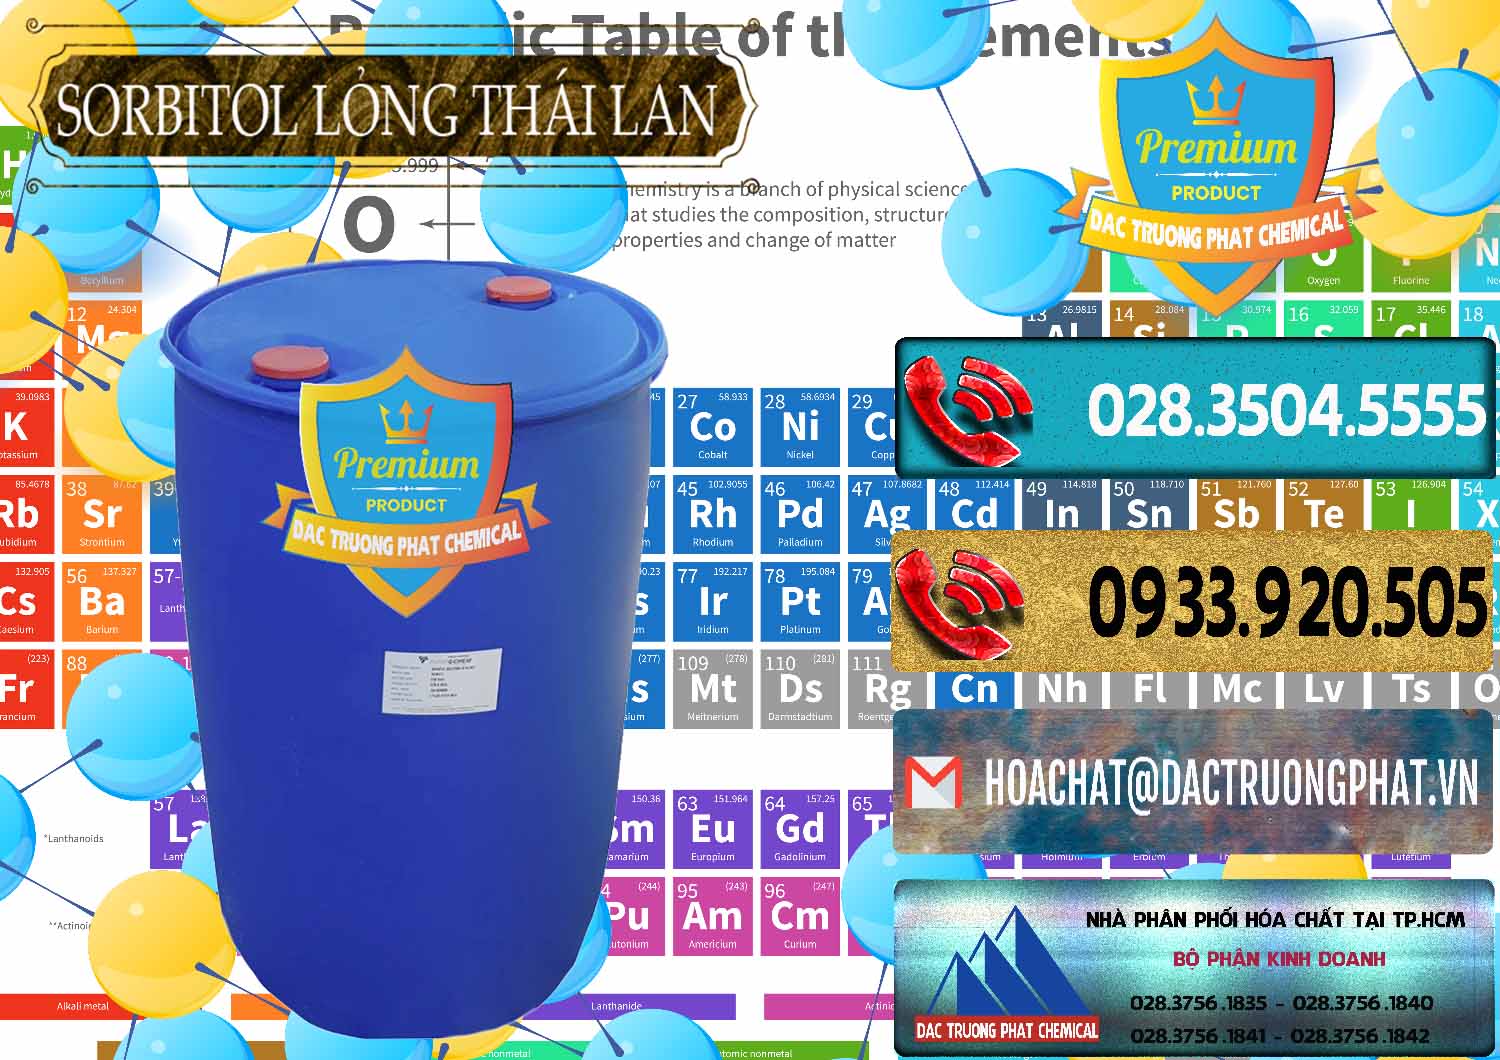 Chuyên cung cấp & bán Sorbitol - C6H14O6 Lỏng 70% Food Grade Thái Lan Thailand - 0341 - Cty chuyên phân phối - bán hóa chất tại TP.HCM - hoachatdetnhuom.com